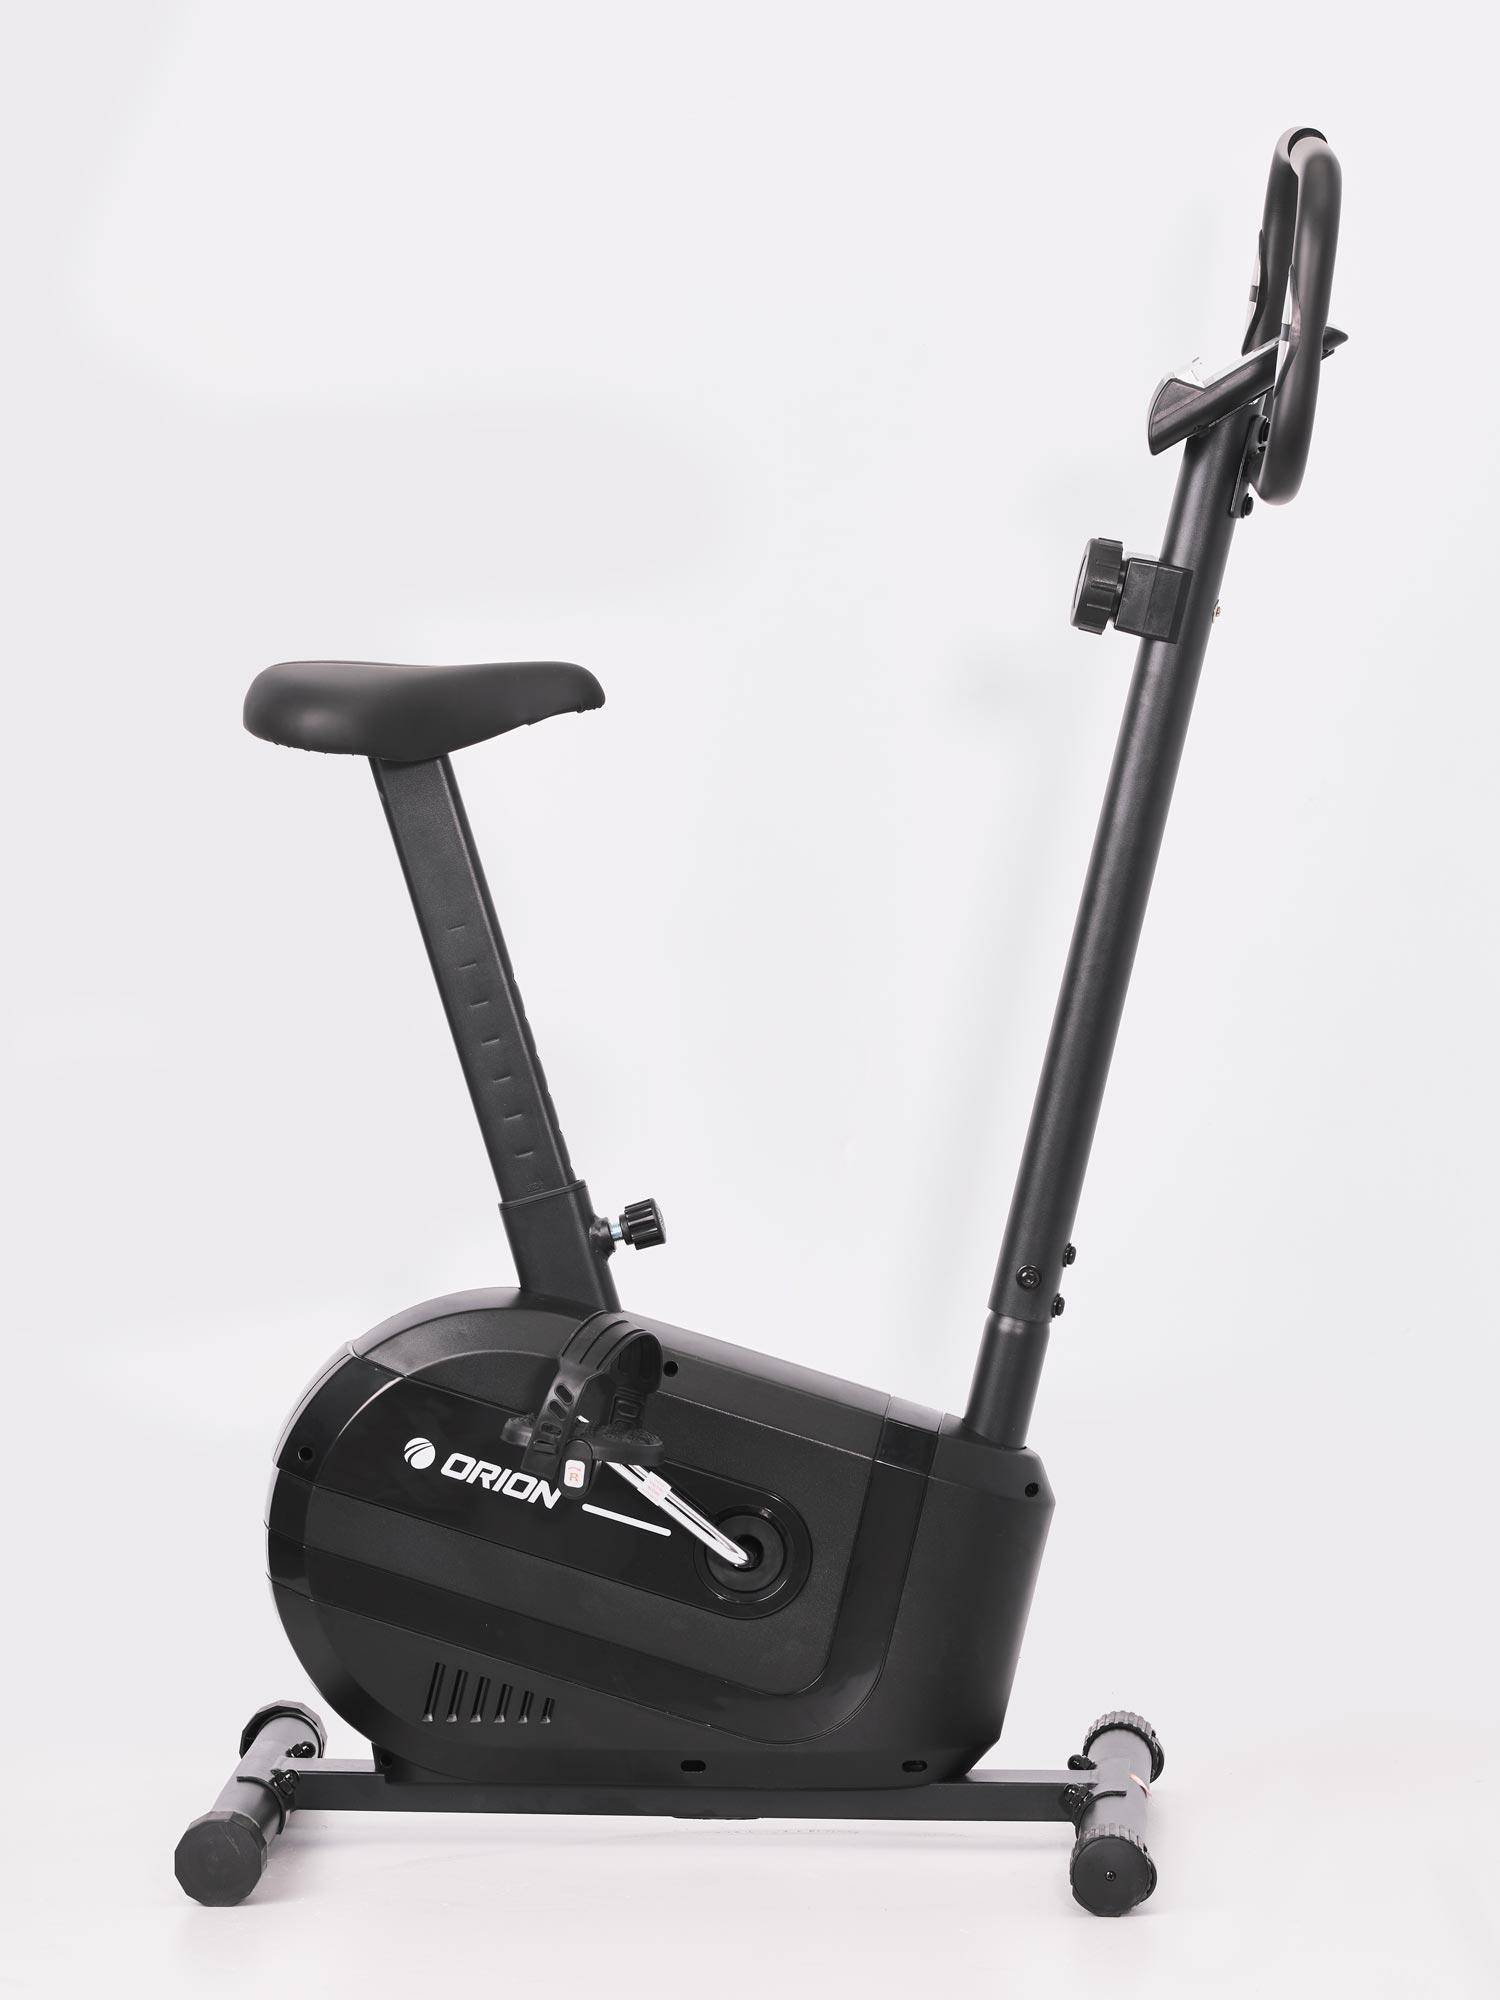 Selected image for ORION Sobni bicikl Joy L200 Мах 5 kg crni